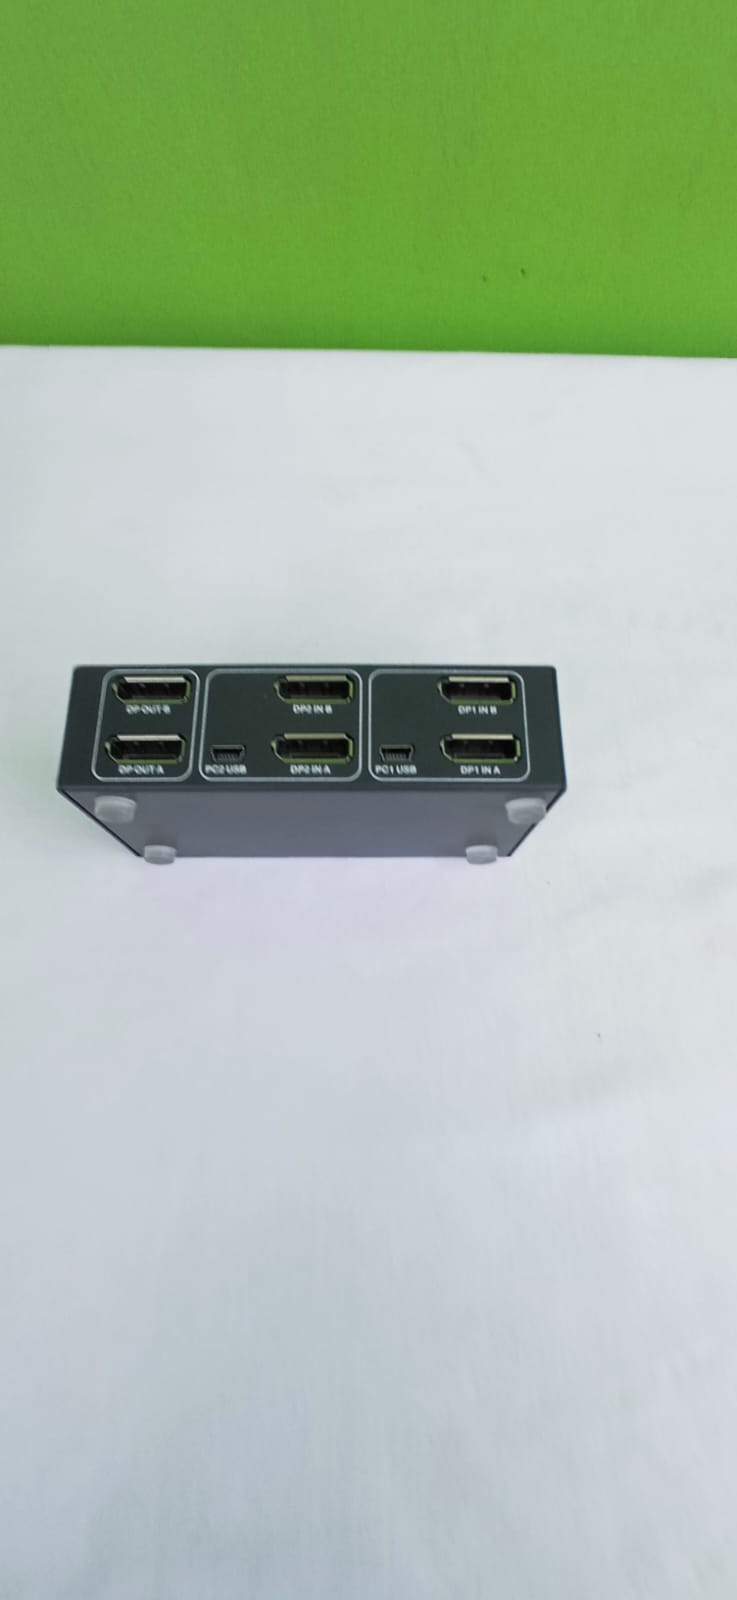 Steetek HDMI KVM Switch Dual Monitors 2 Port 4K @ 30Hz, KVM Switch 2 számítógép 2 monitor kiterjesztett kijelzője, Dual Monitor KVM by Hotkey Switching 4 HDMI és 2 USB kábel a szállítási terjedelem tartalmazza